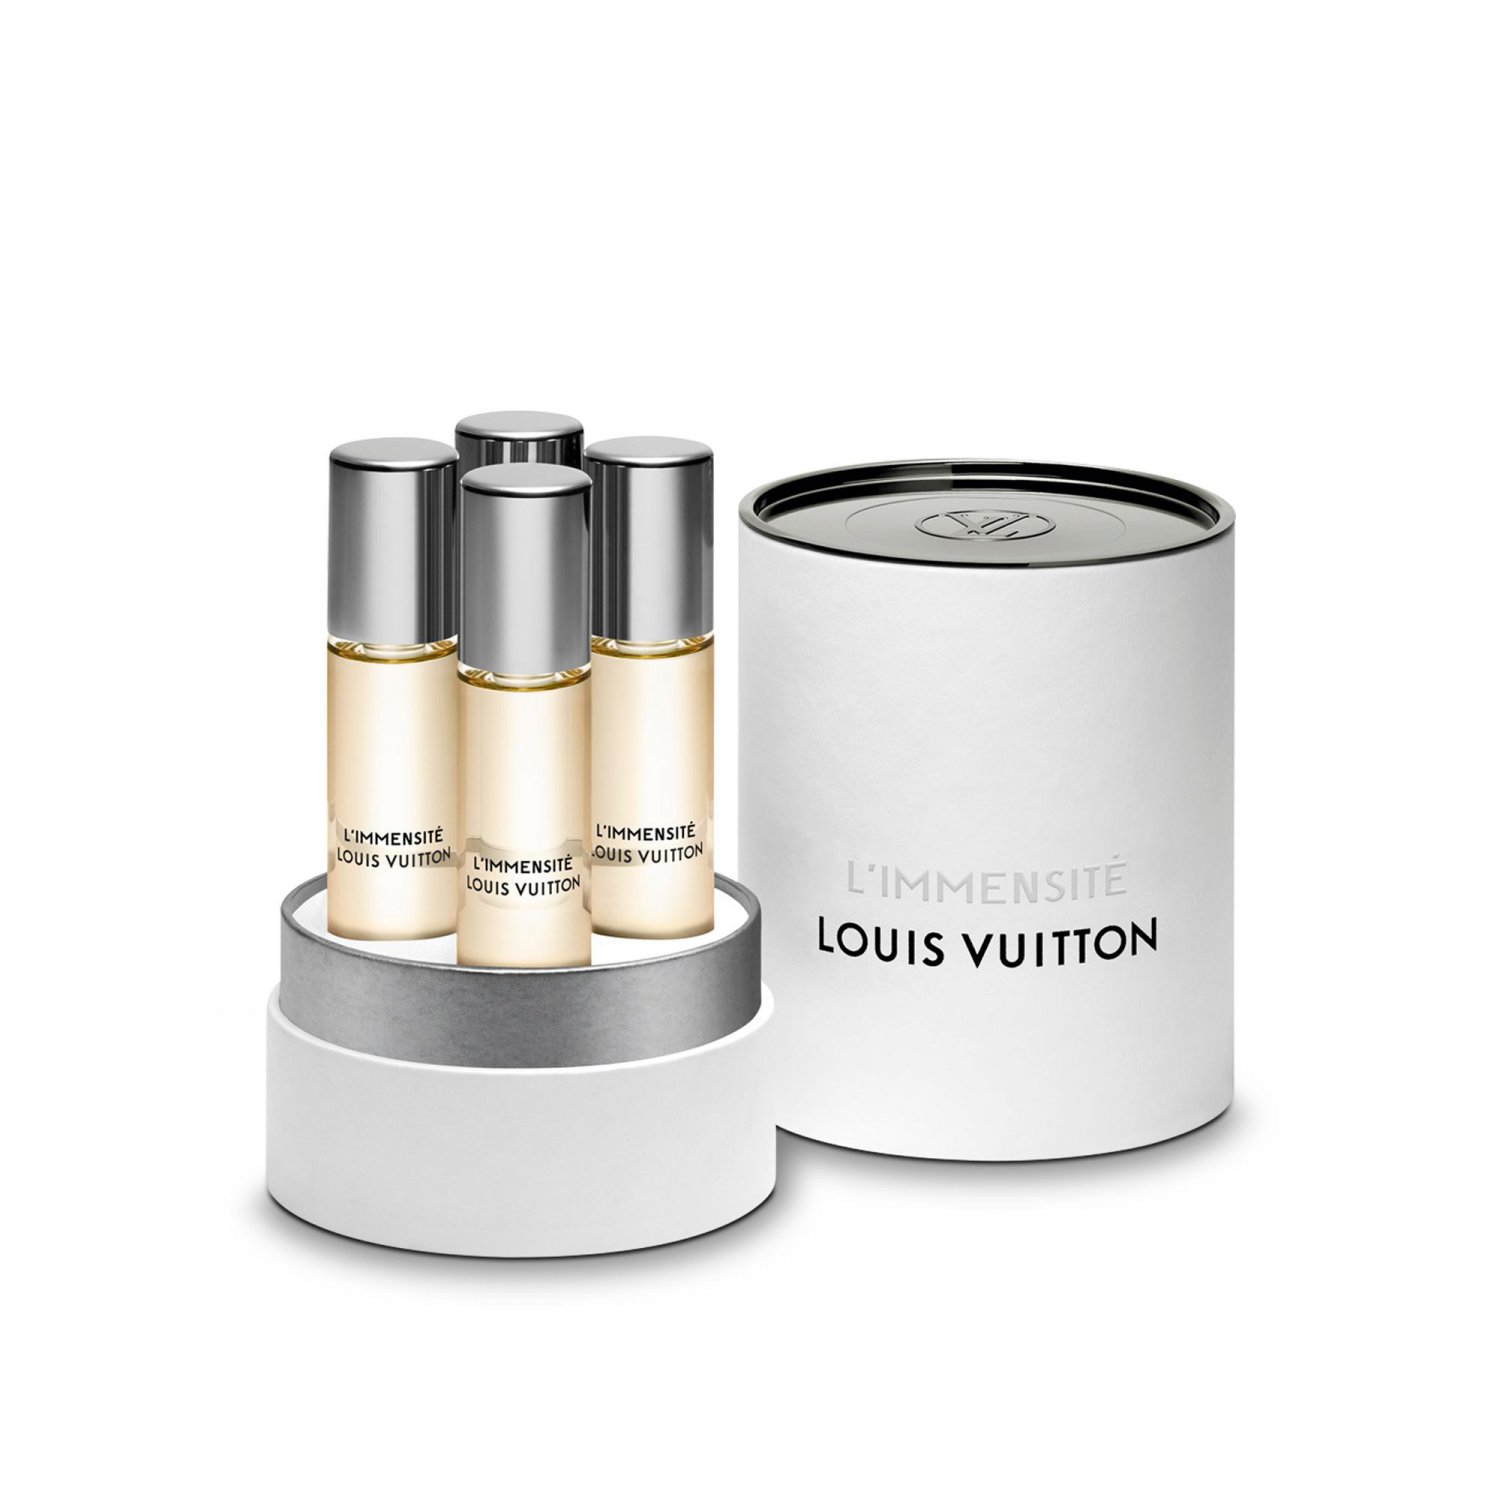 Louis Vuitton L'Immensite Cologne Eau de Parfum Travel spray Refill.